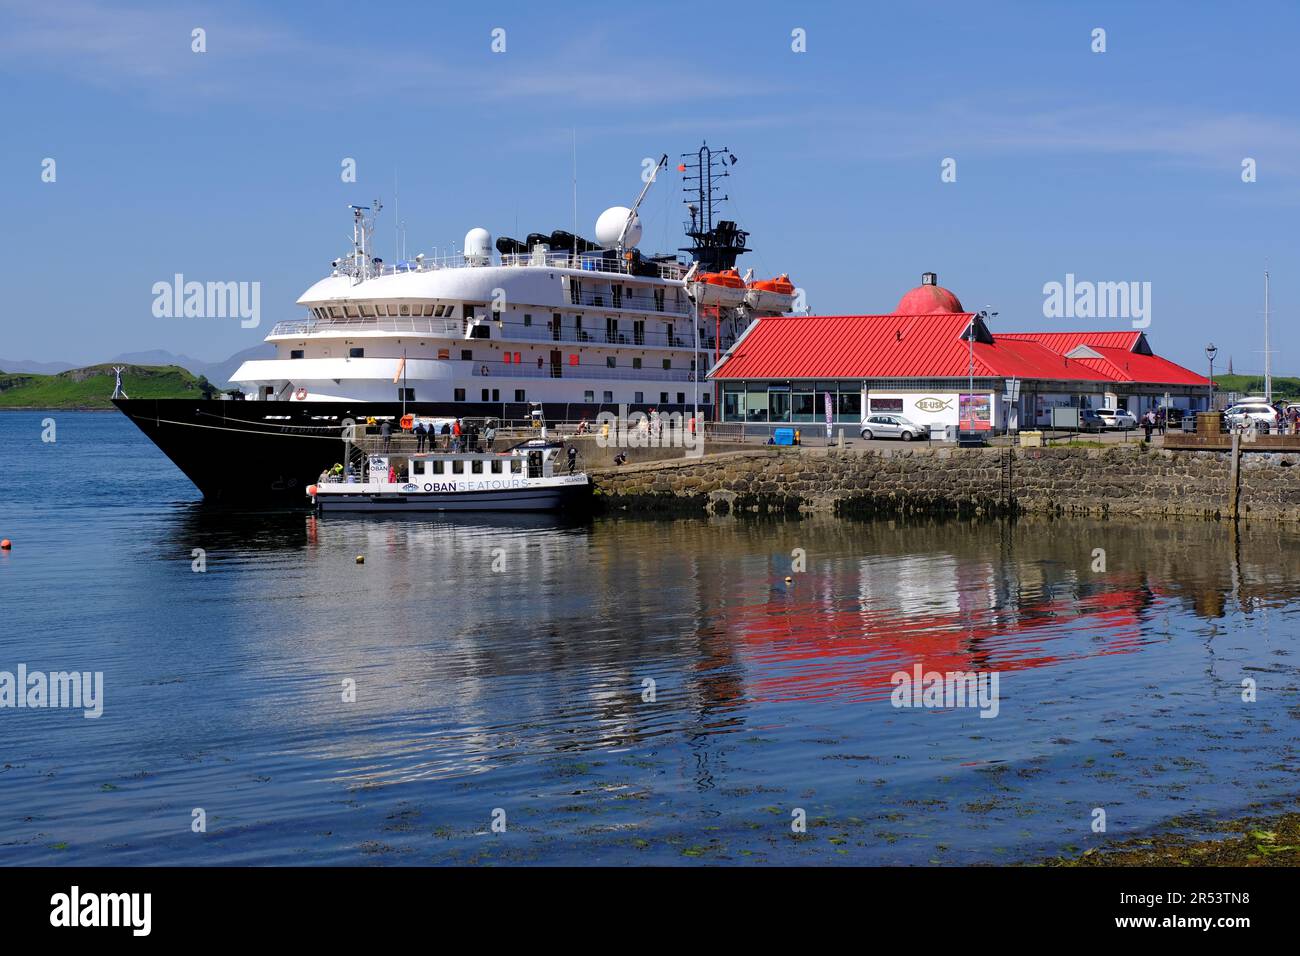 Hafen von Oban mit hebridäischem Sky Cruise-Schiff und Booten von Oban Sea Tours vor Anker, Oban, Schottland Stockfoto